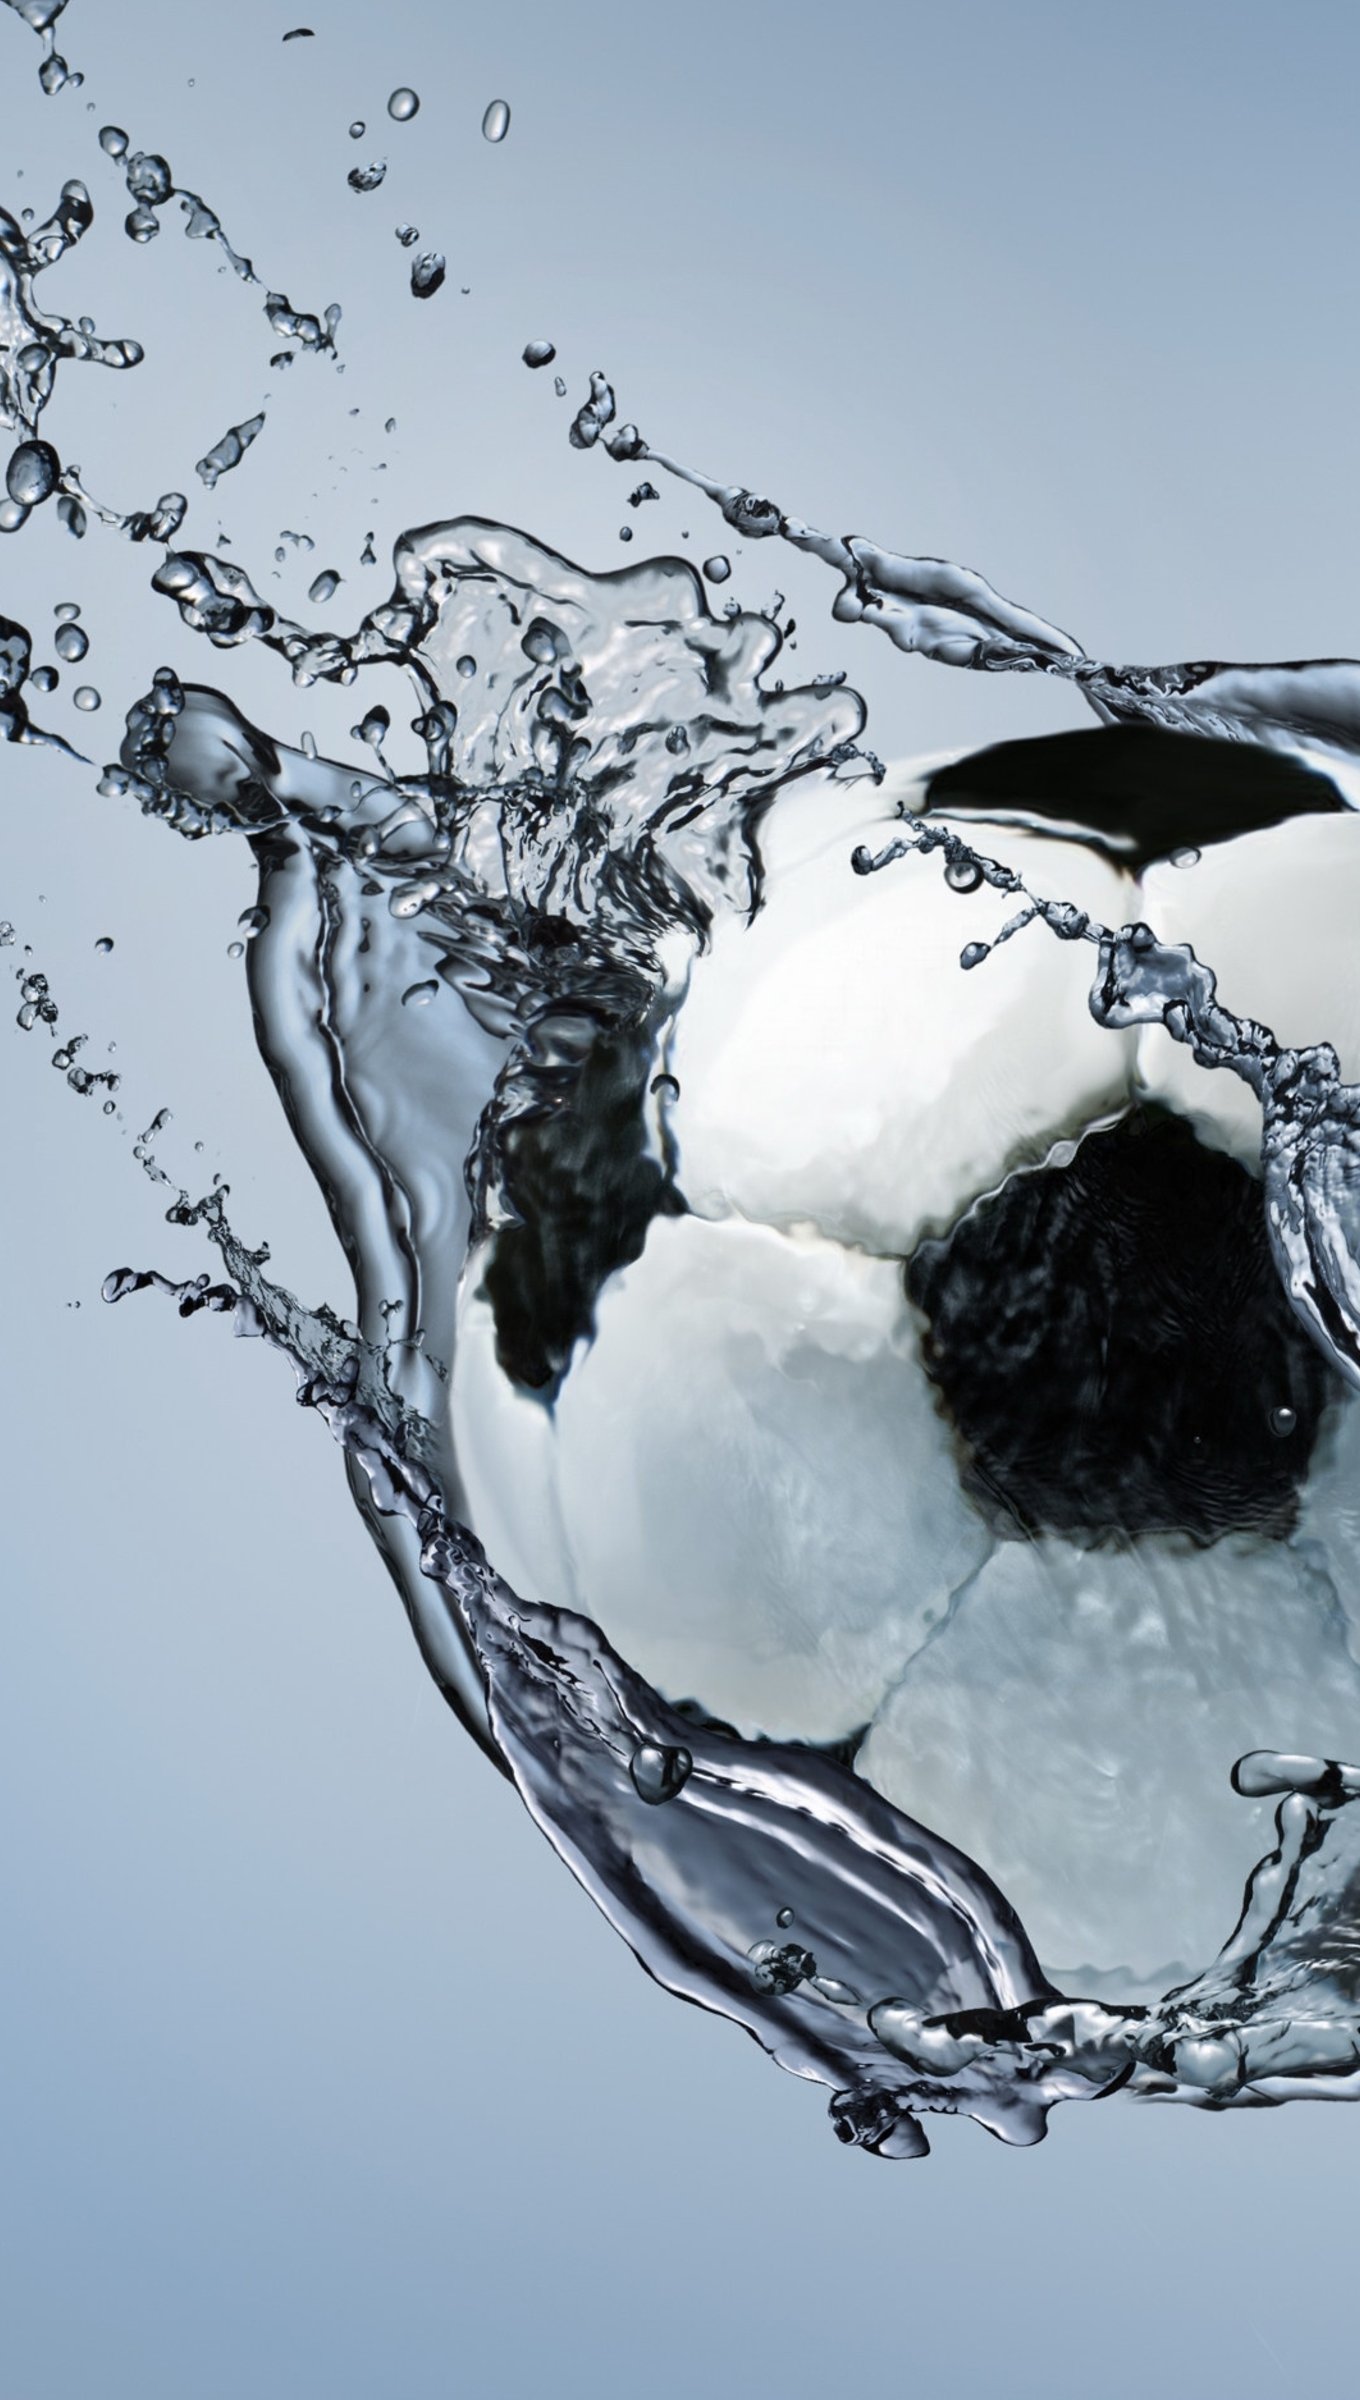 Soccer Ball going through water Wallpaper 4k Ultra HD ID:4800